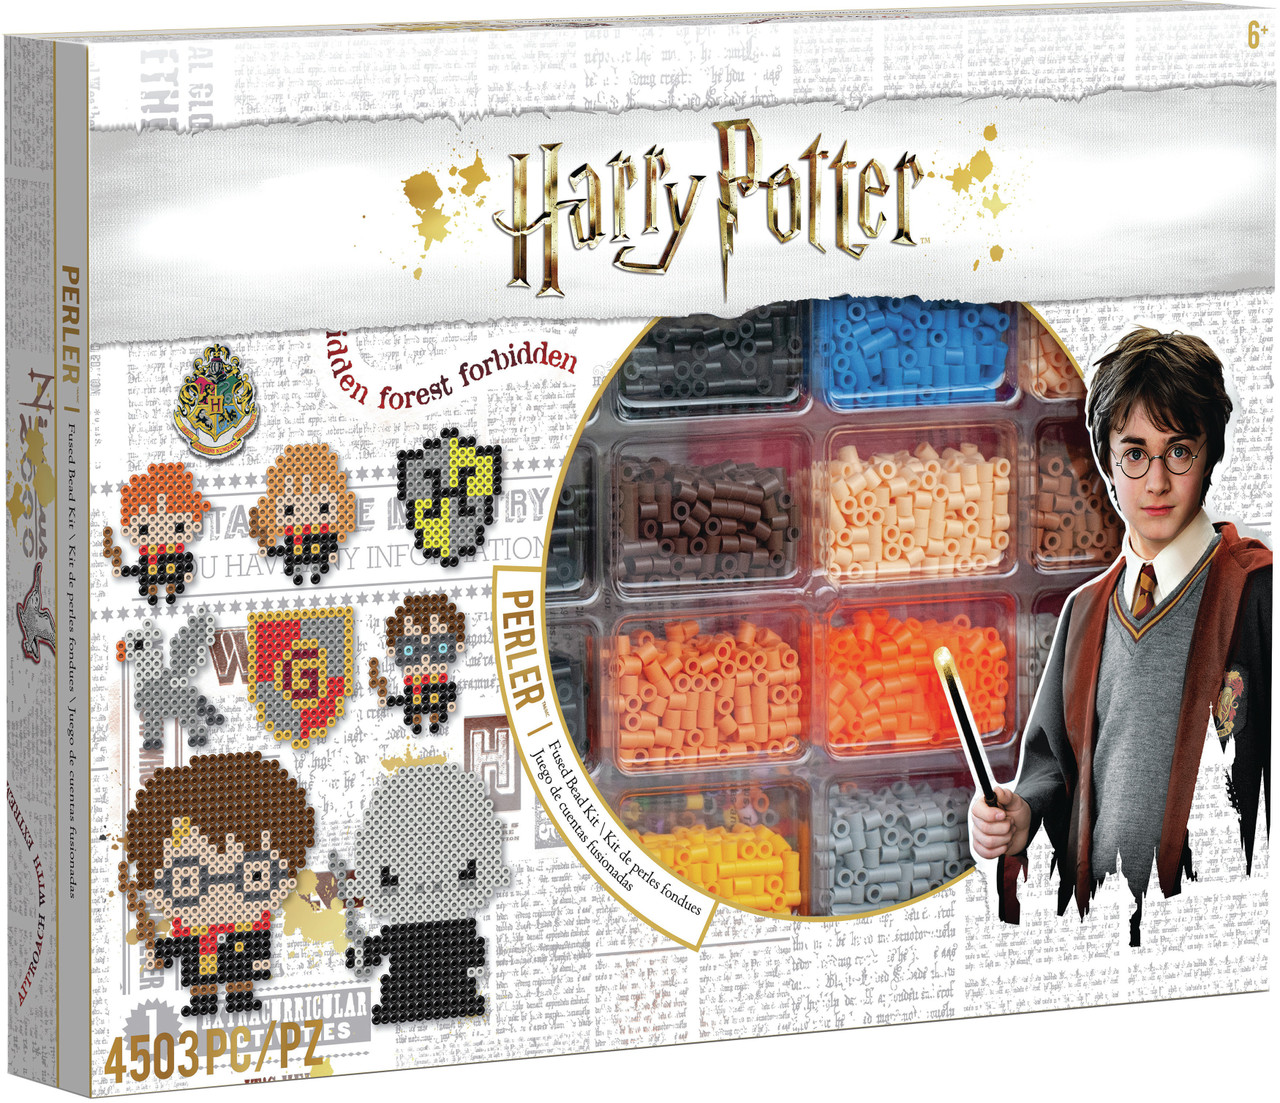 Crochet Kits: Harry Potter Crochet (Mixed media product)